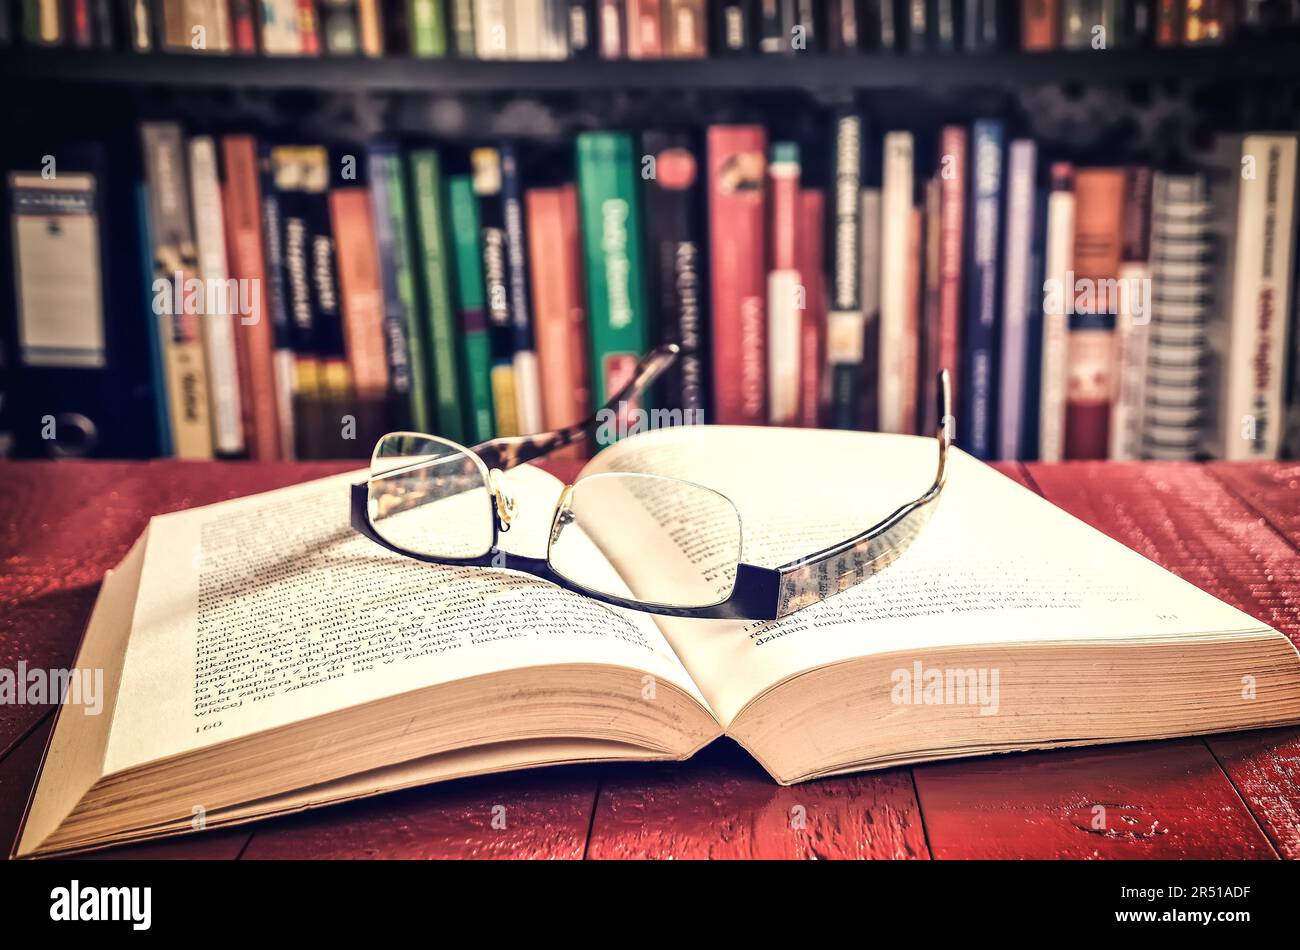 Ouvrez un livre et des lunettes avec des livres sur une étagère à l'arrière-plan. Faible profondeur de champ. Banque D'Images